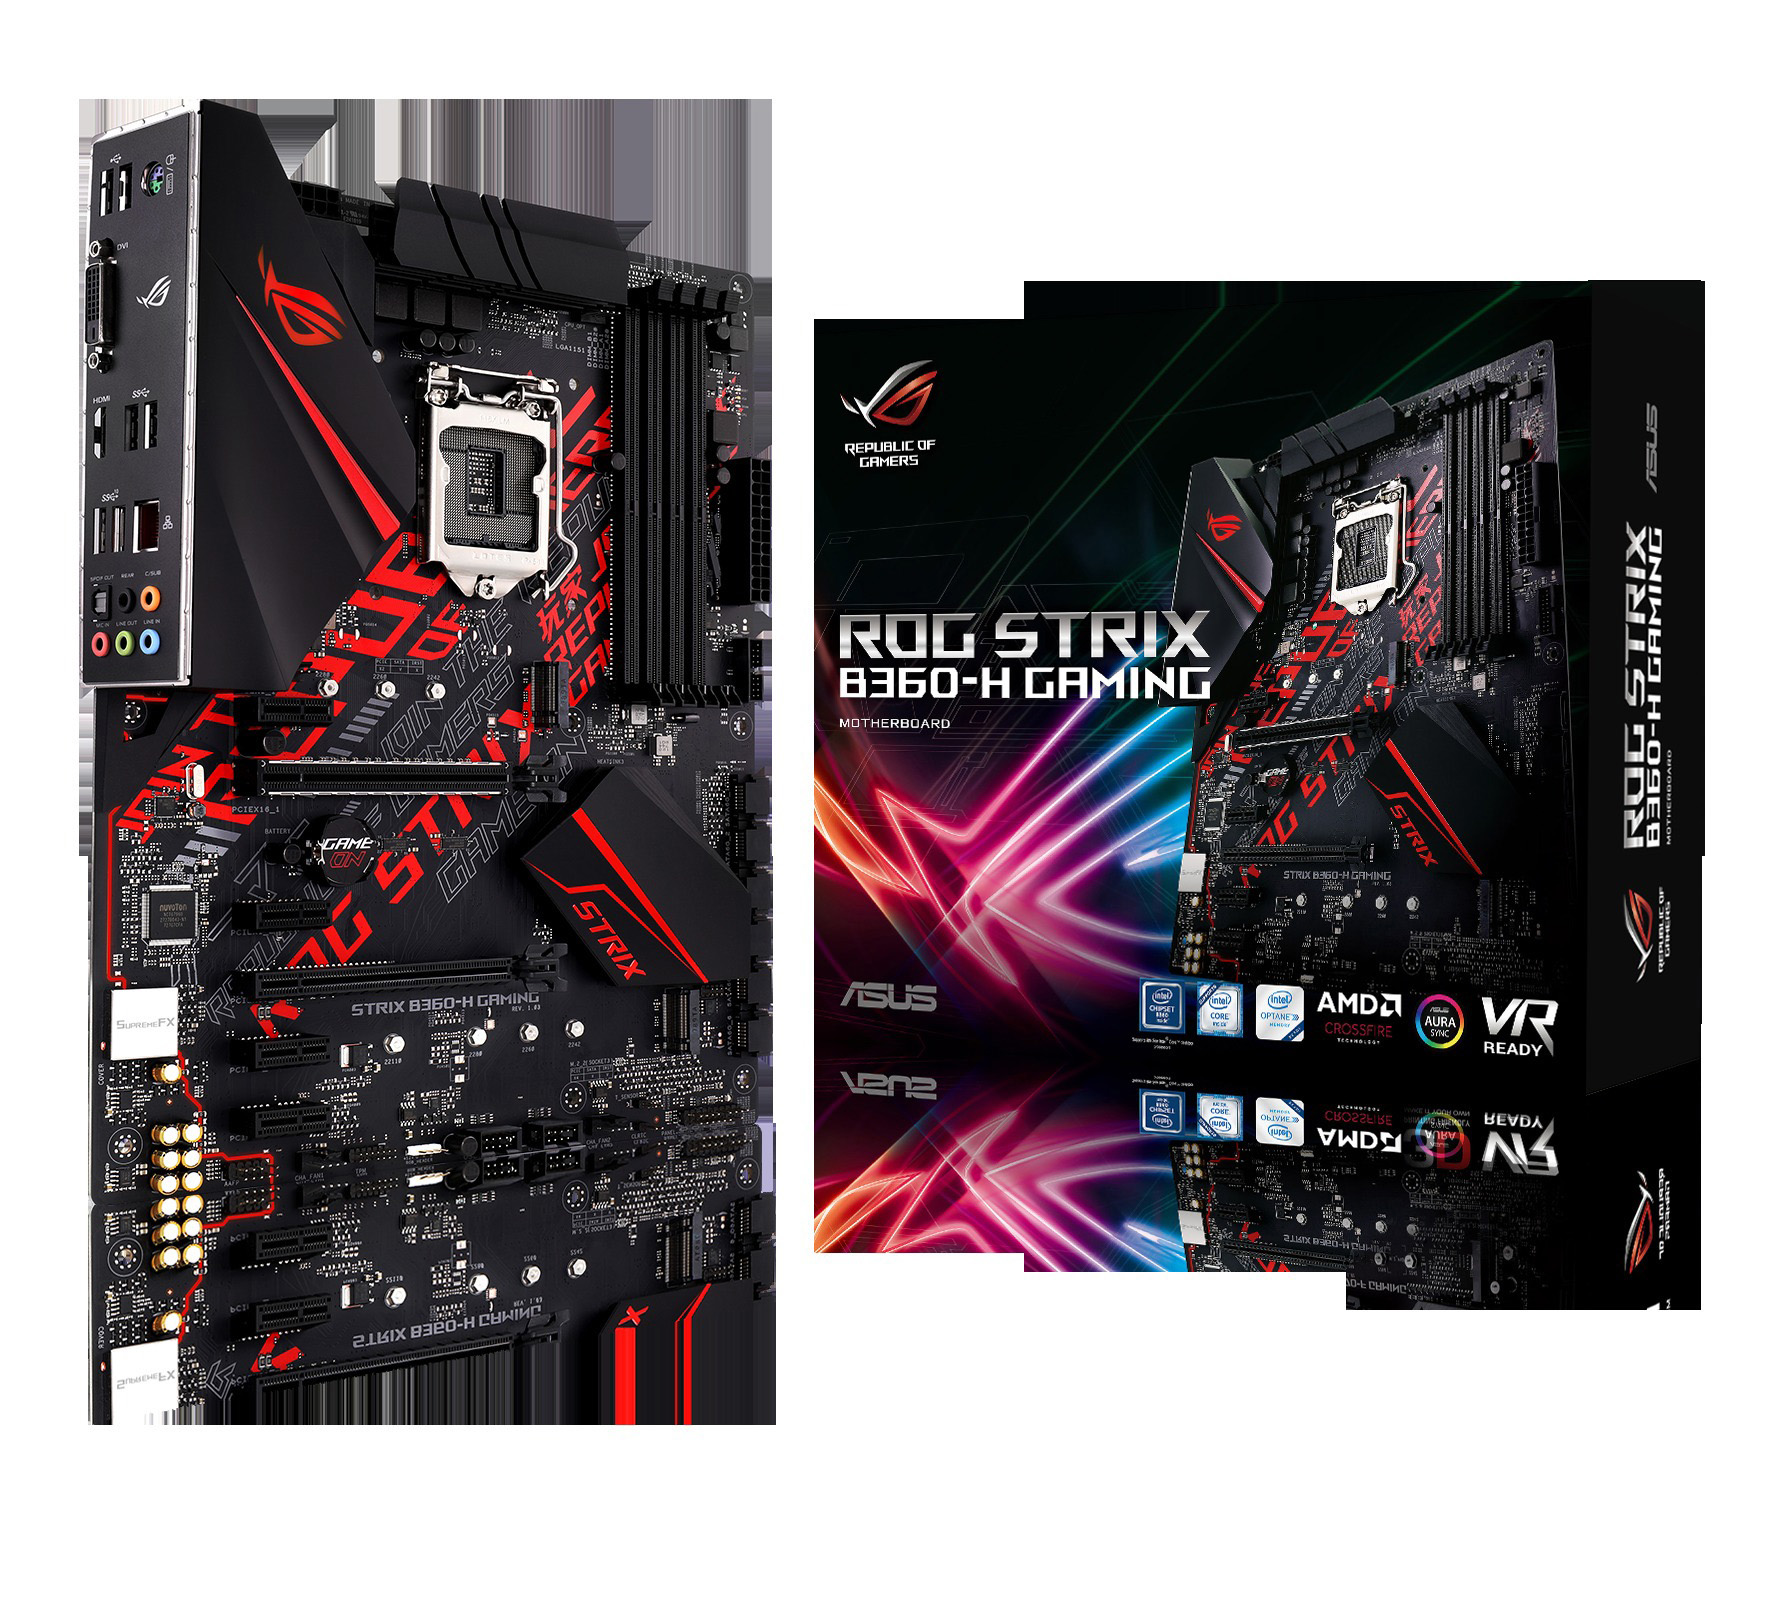 schwarz ASUS ROG Strix Mainboard Gaming B360-H